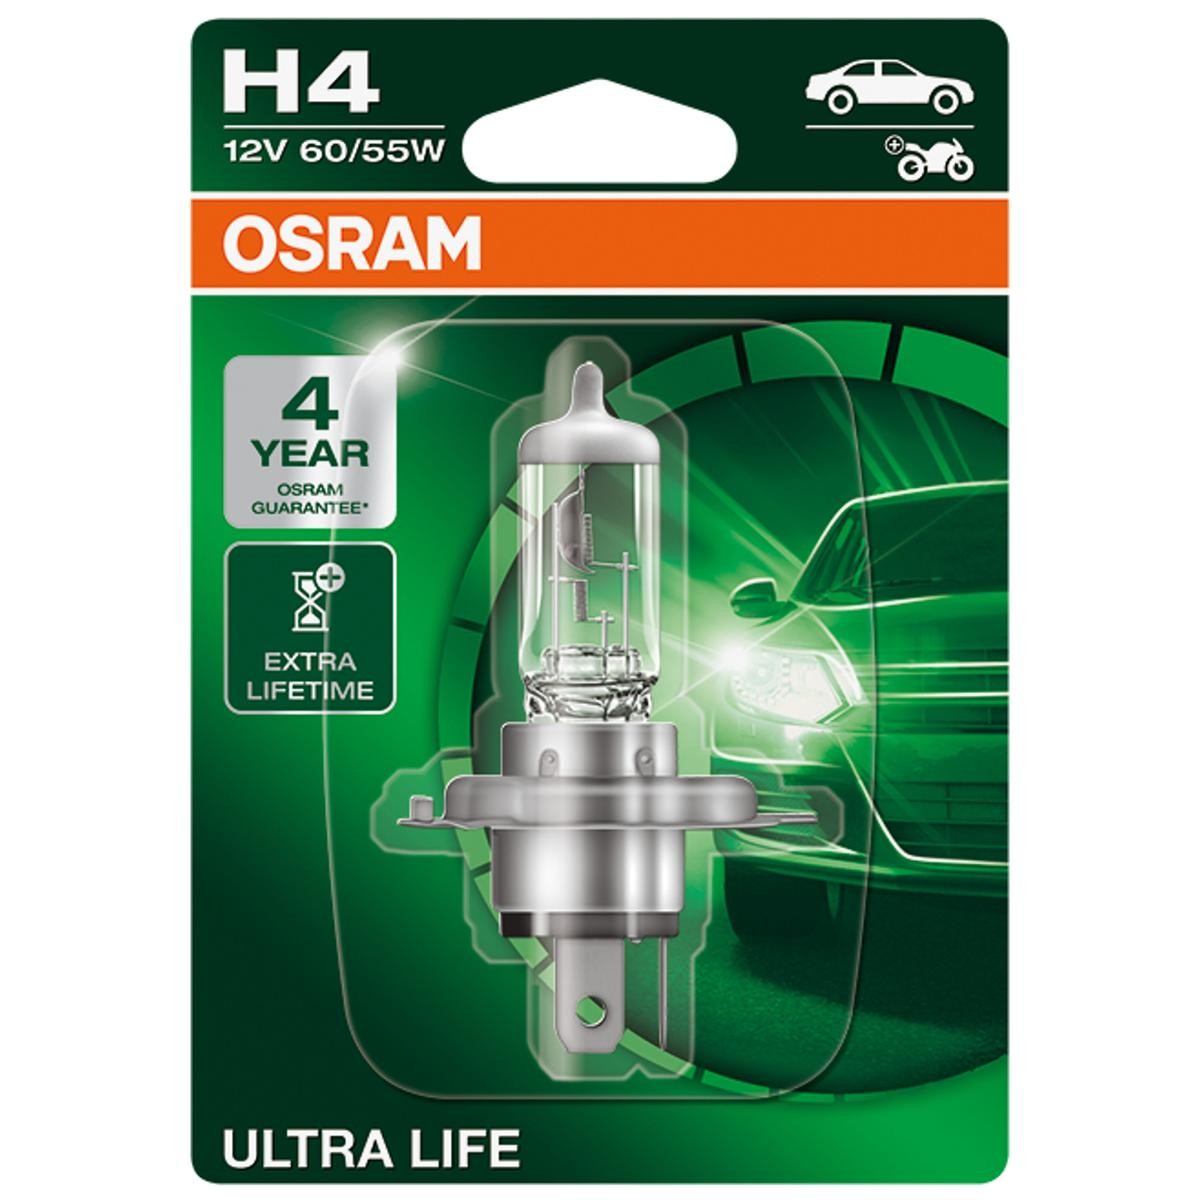 64193ULT-01B OSRAM ULTRA LIFE H4 12V 60/55W 3200K Halogène Ampoule,  projecteur longue portée